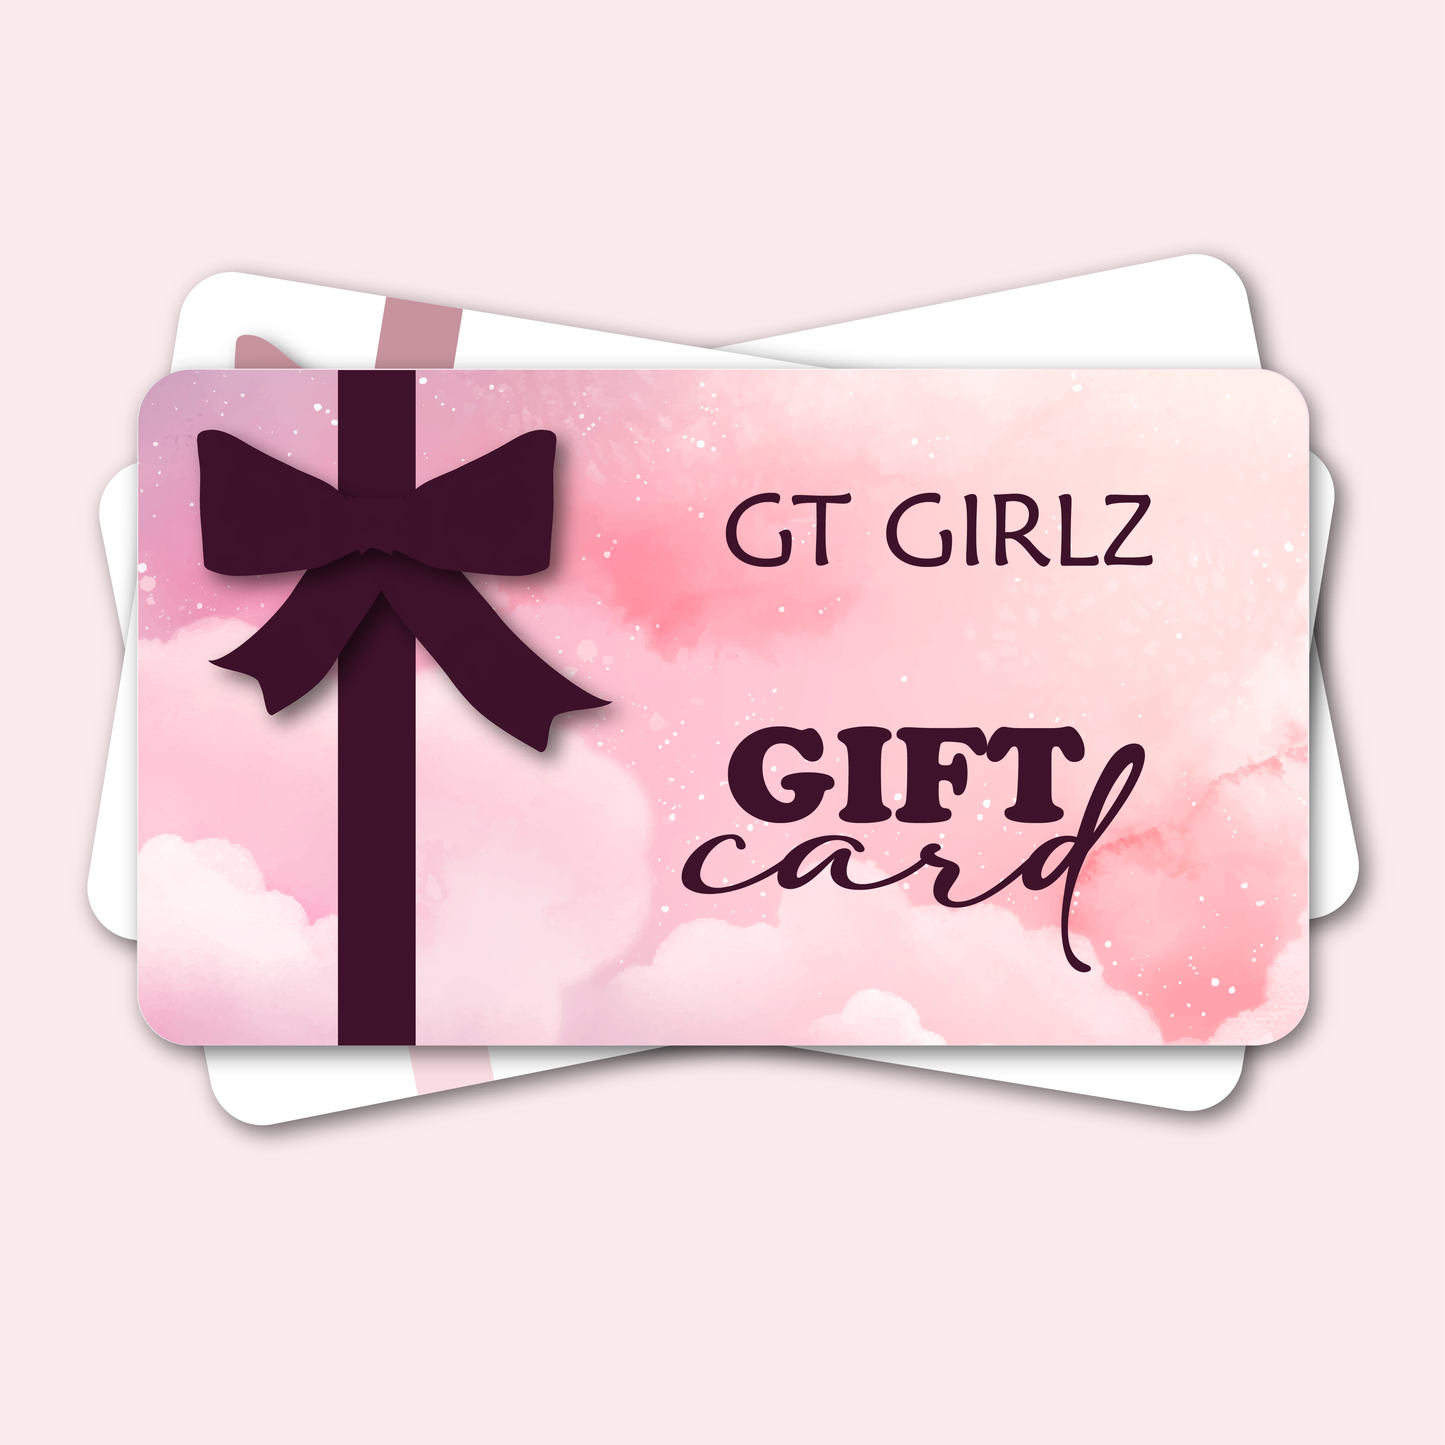 GT GIRLZ GIFT CARD